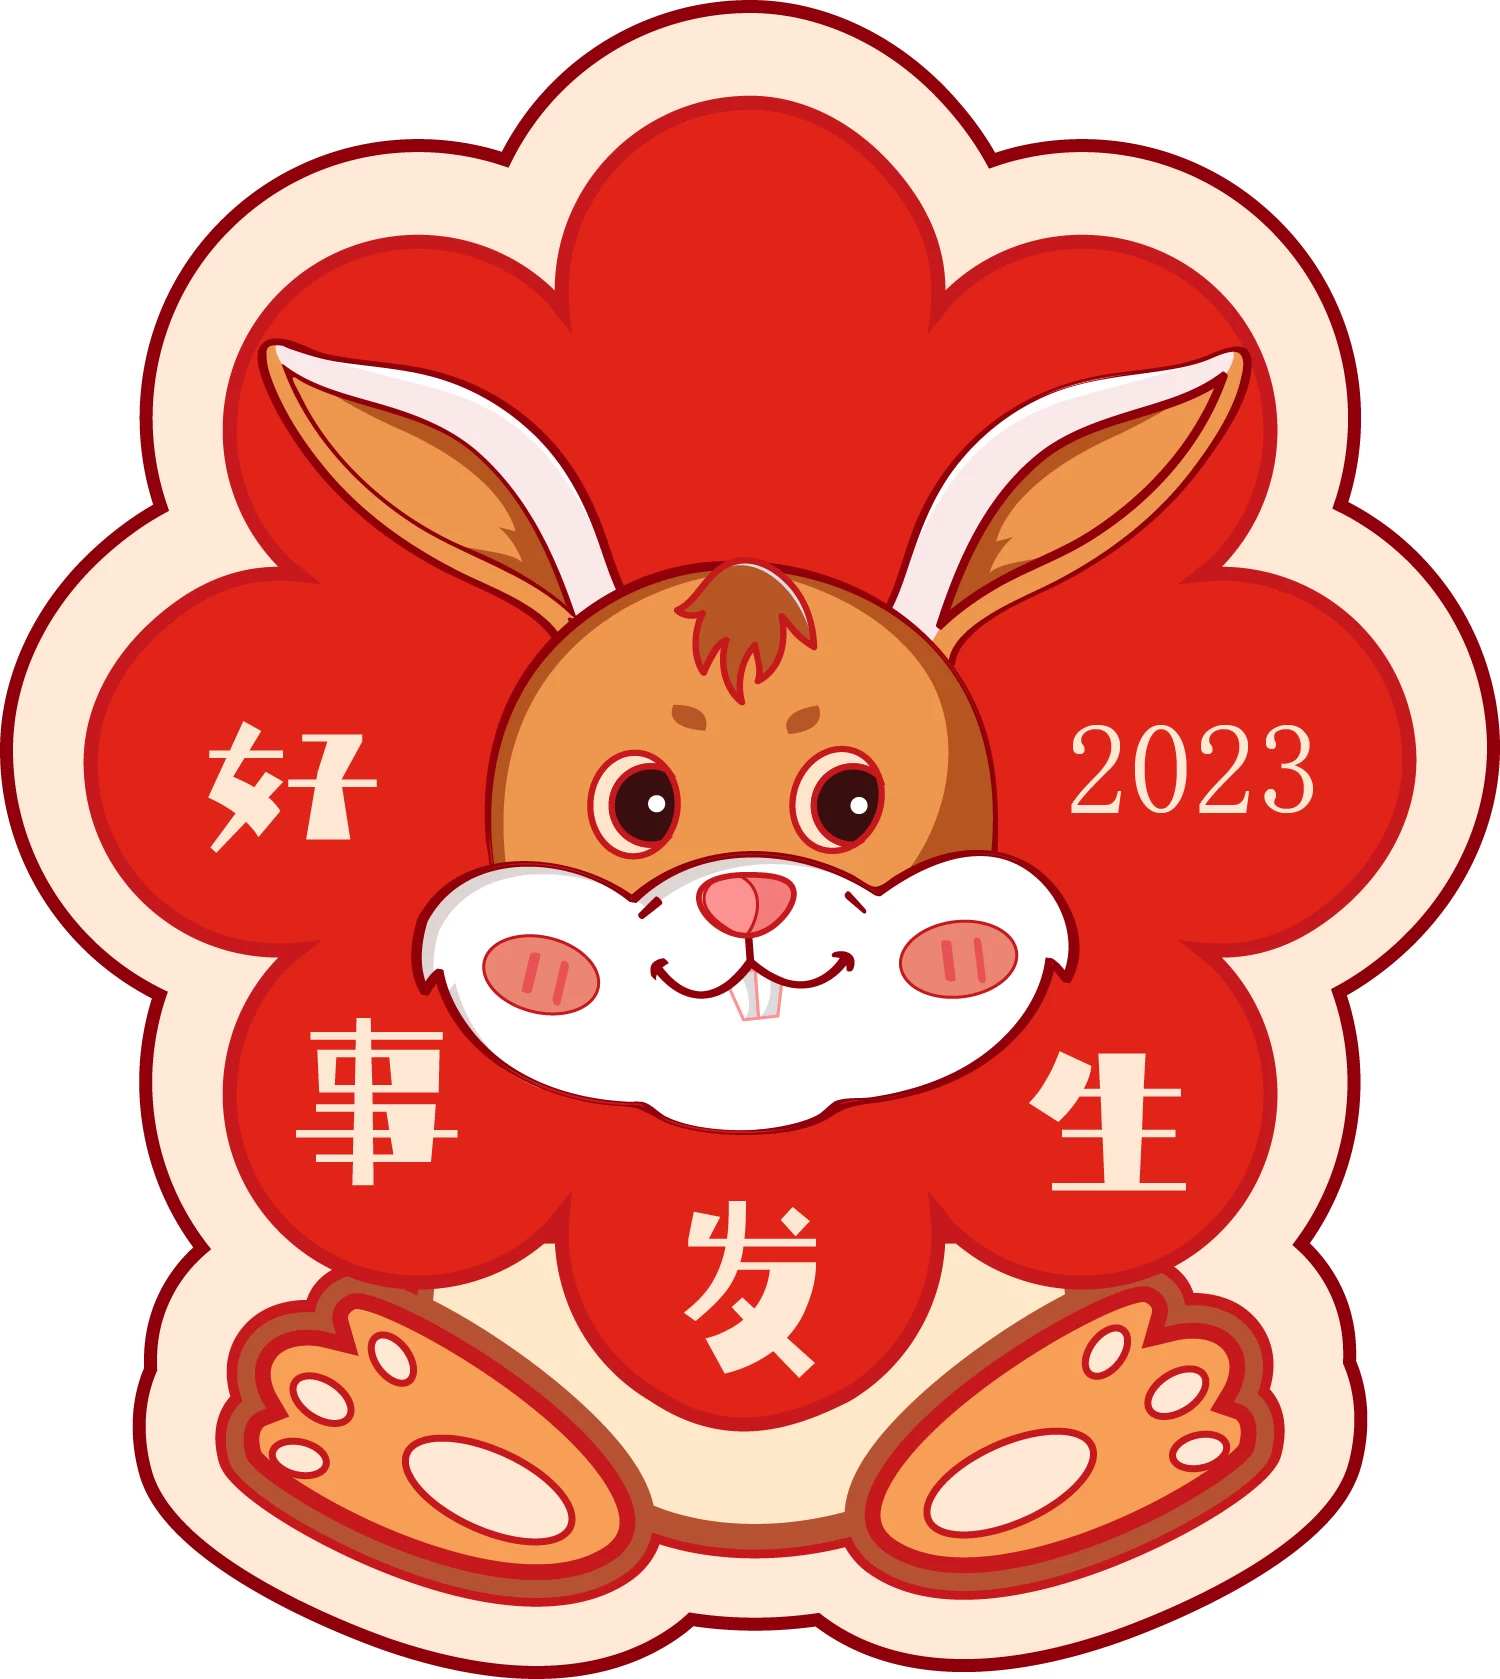 2023兔年元旦卡通贴纸手举牌印章元素插画图案png免扣PSD/AI素材【223】